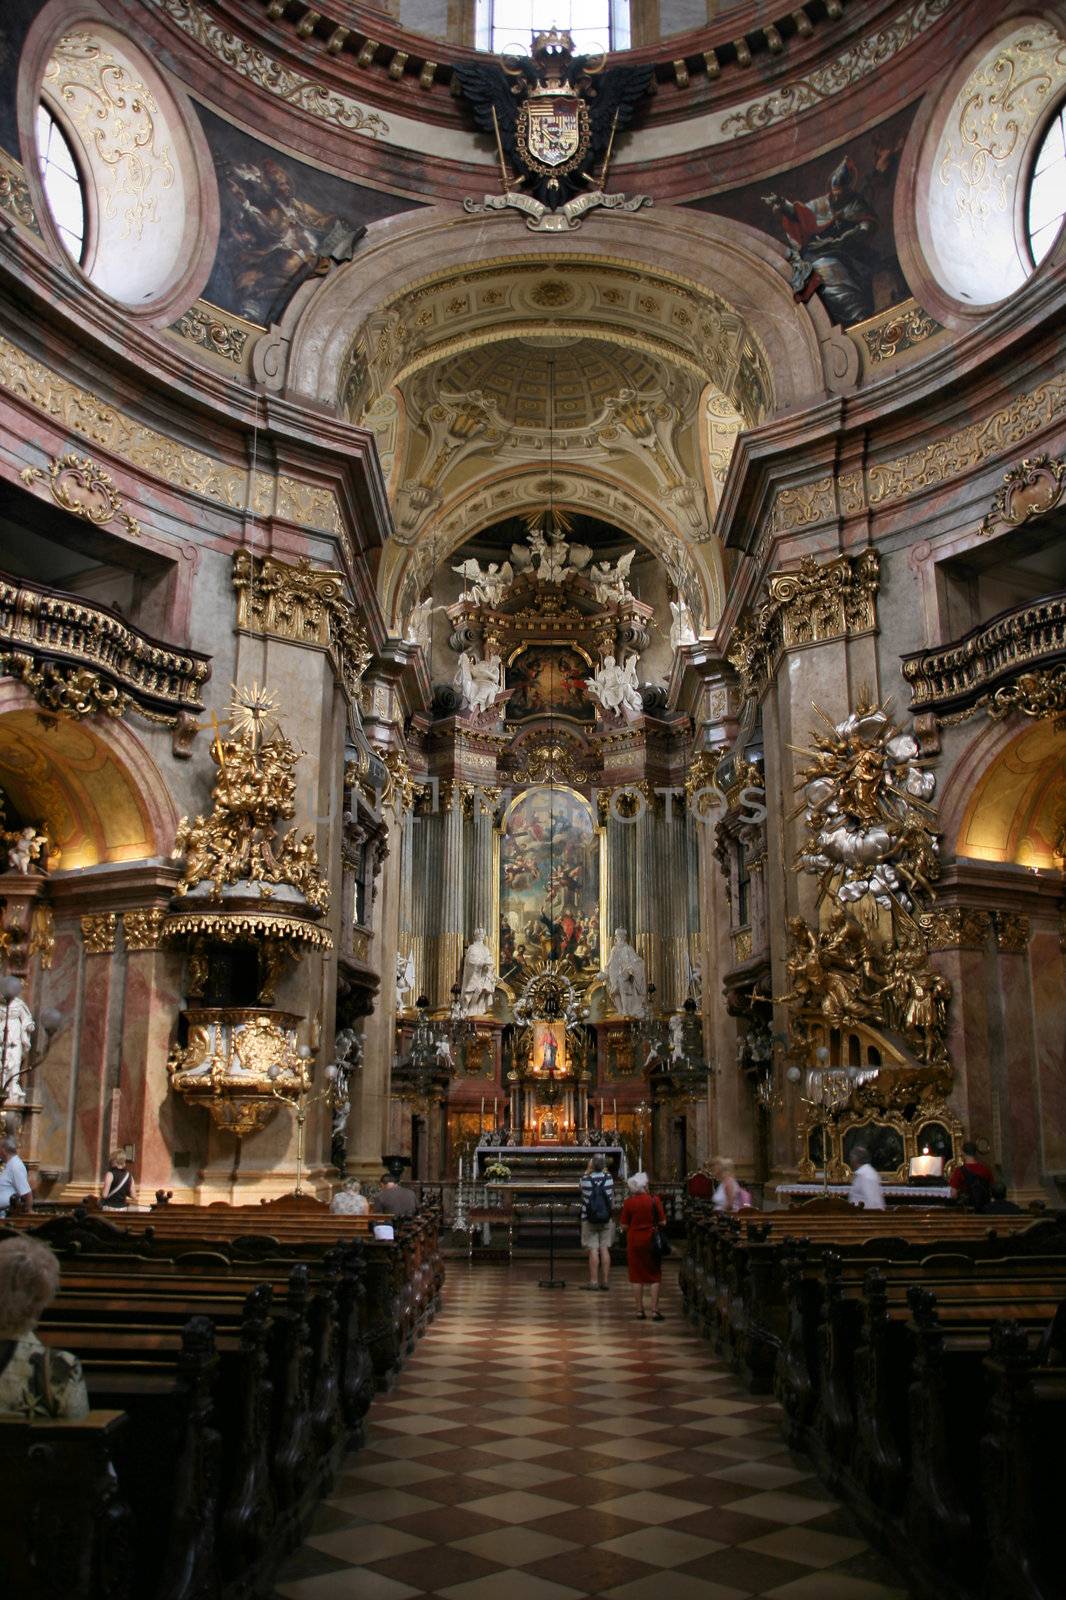 Interiors of baroque church in Vienna - Peterskirche on Petersplatz